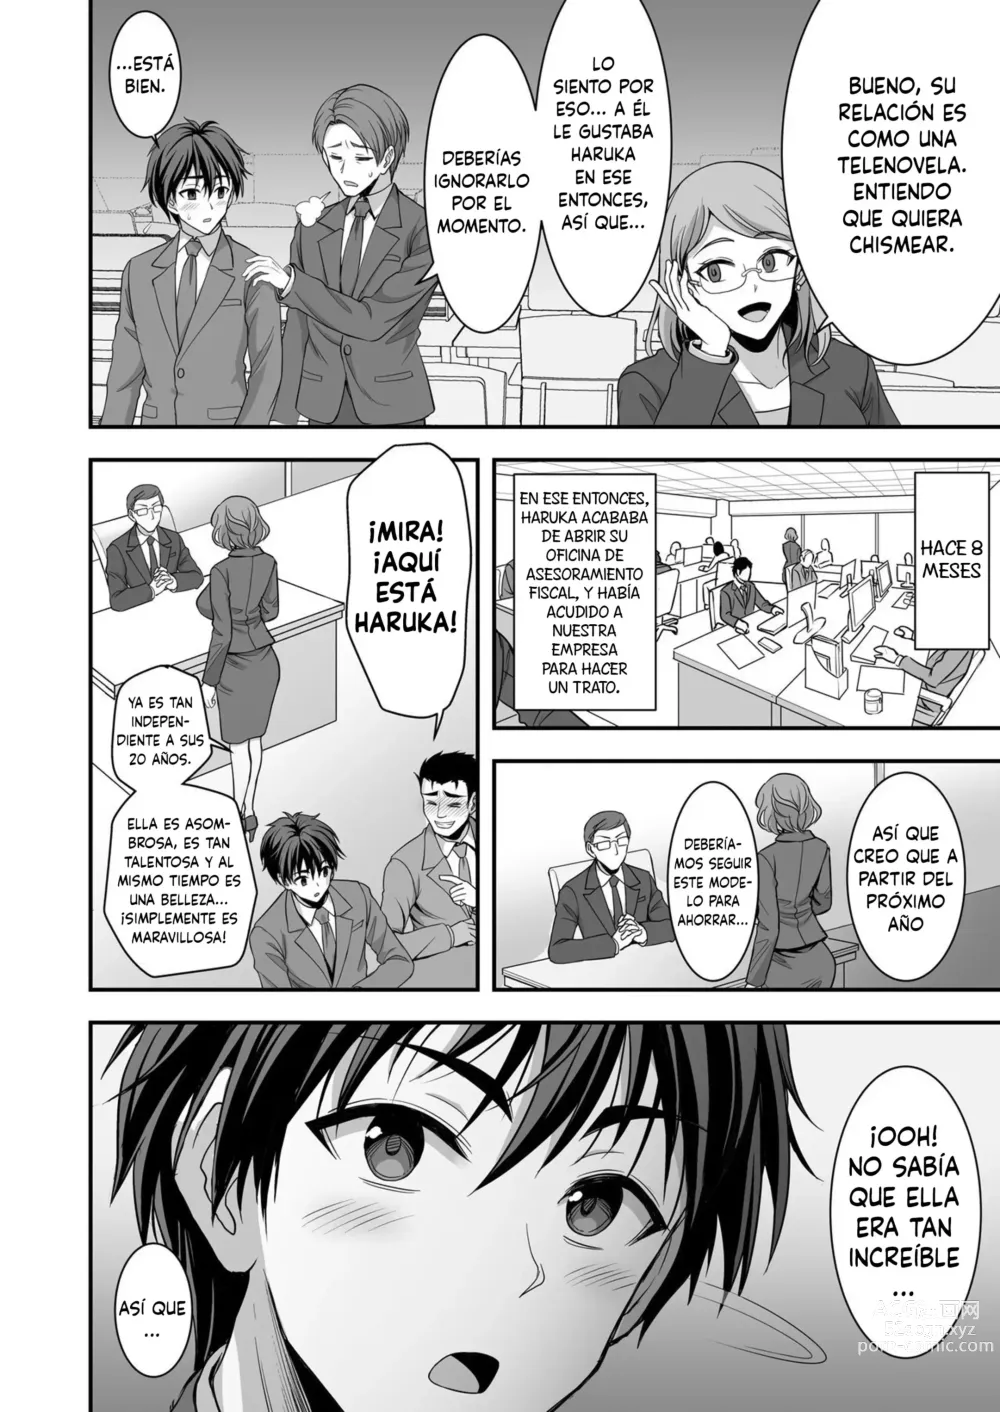 Page 6 of doujinshi La leve trampa de una esposa ~La engañé pero estoy totalmente bajo su control~